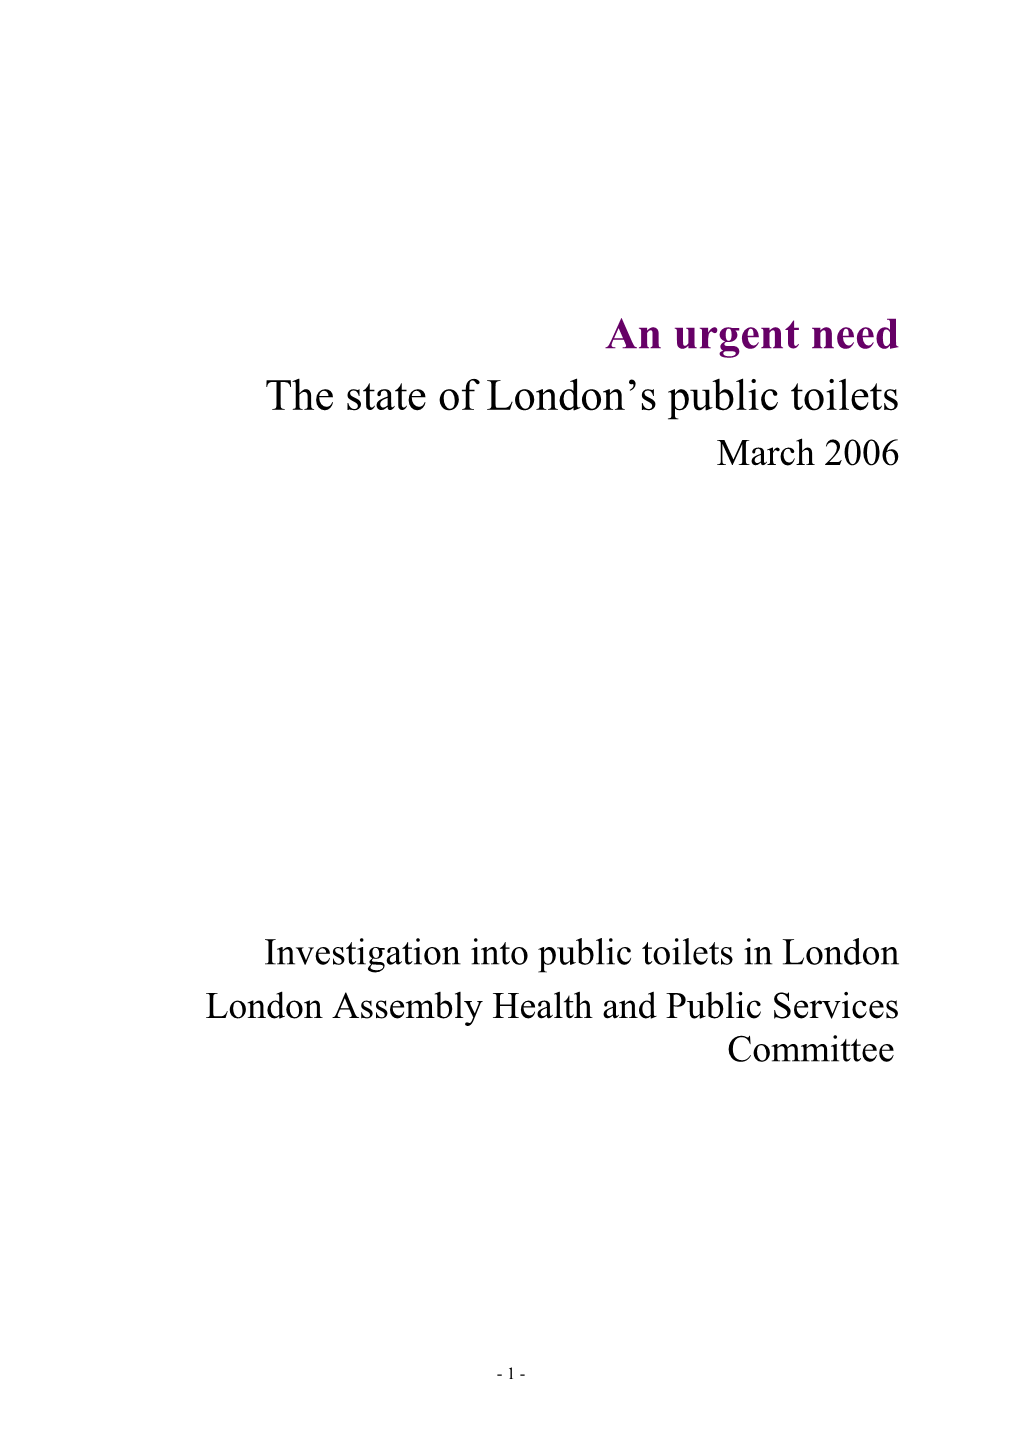 Investigation Into Public Toilets in London